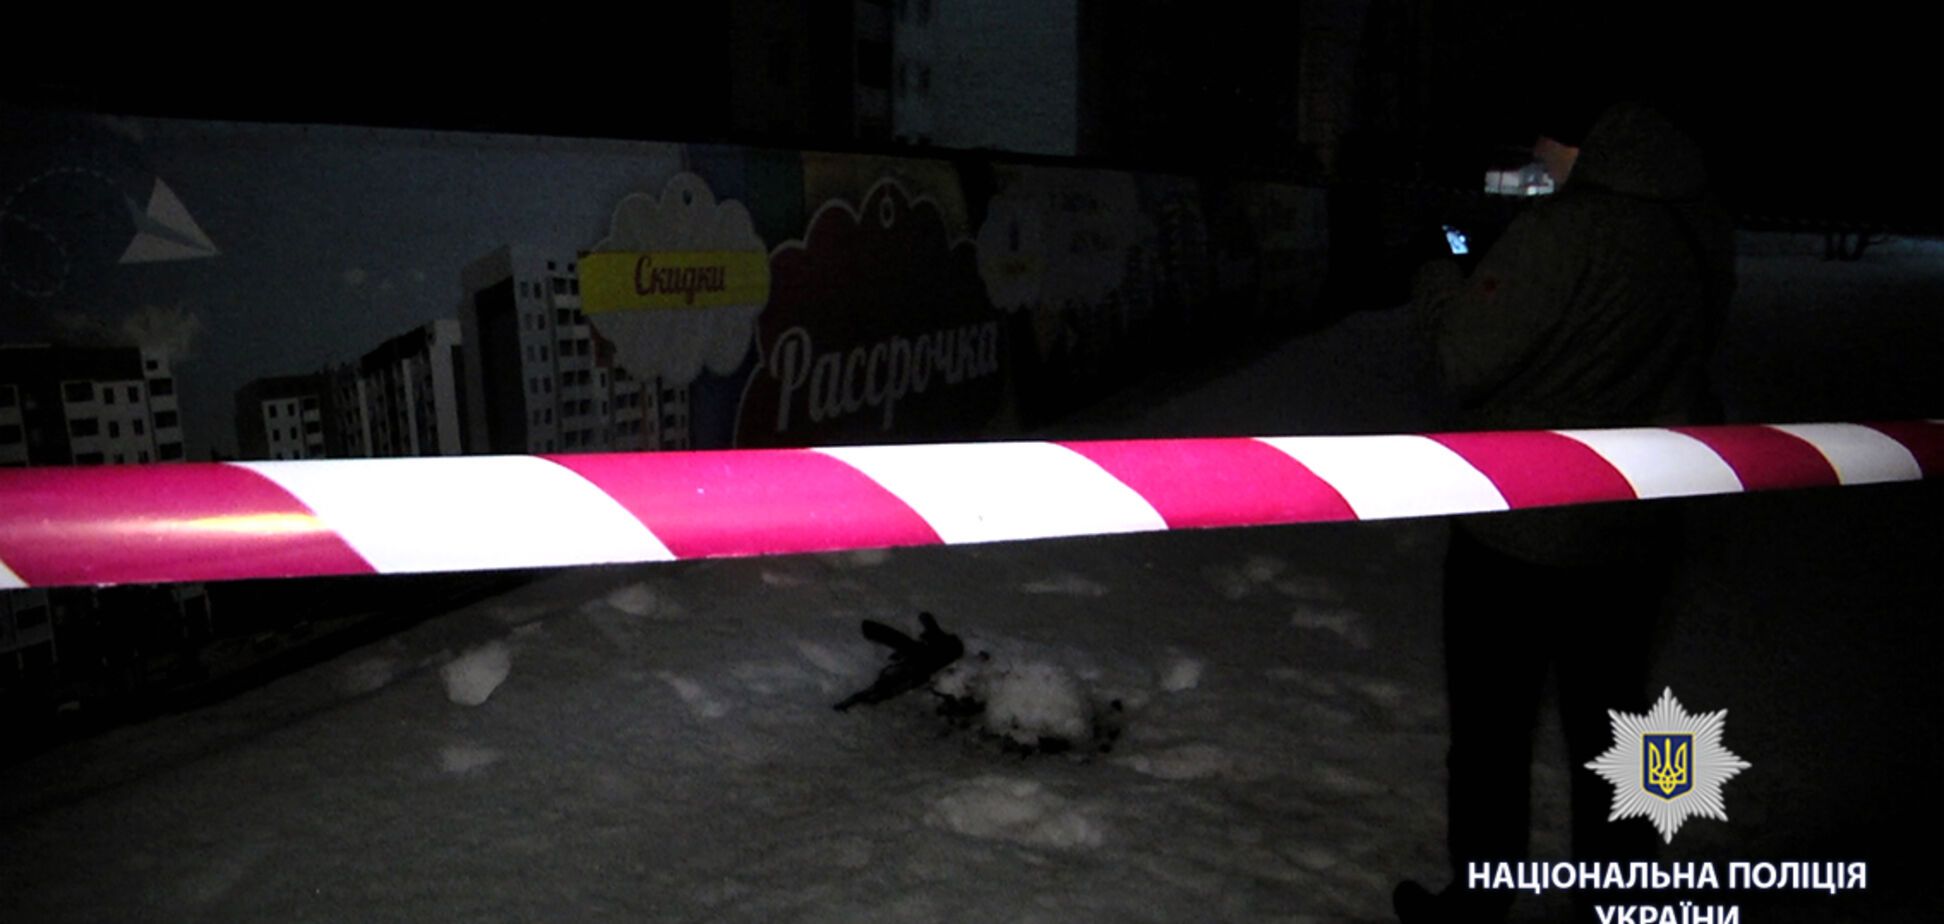 Выходили из ресторана: в Харькове устроили стрельбу по людям